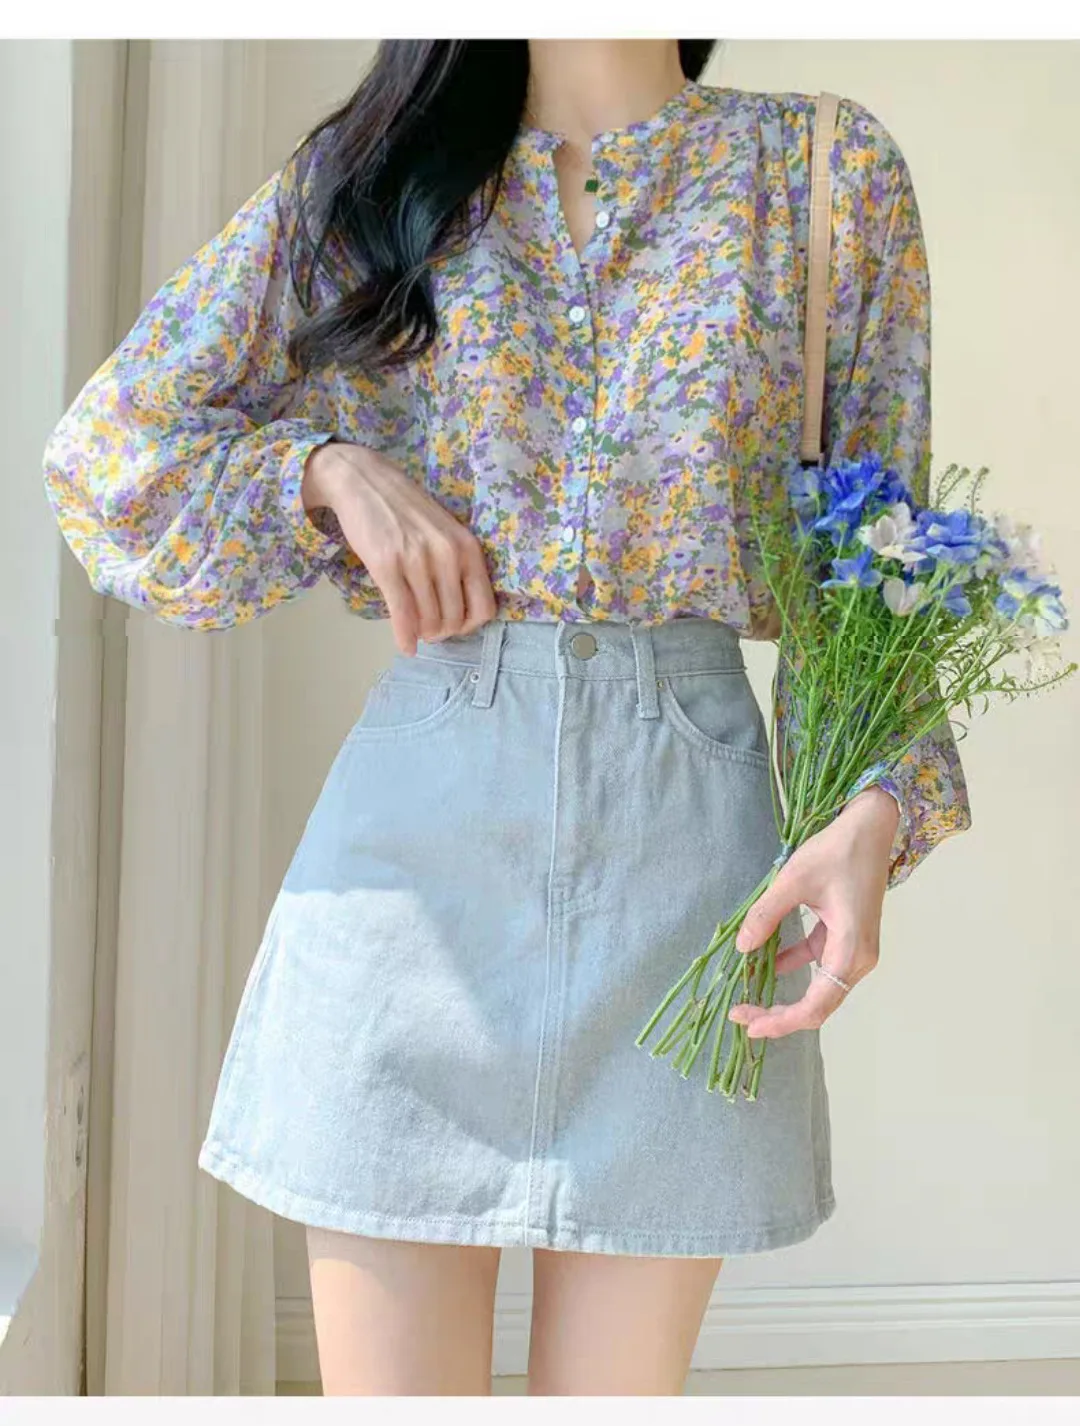 Floral chiffon 2021 summer new shirt short-sleeved fashion girly shirt blouses Tops